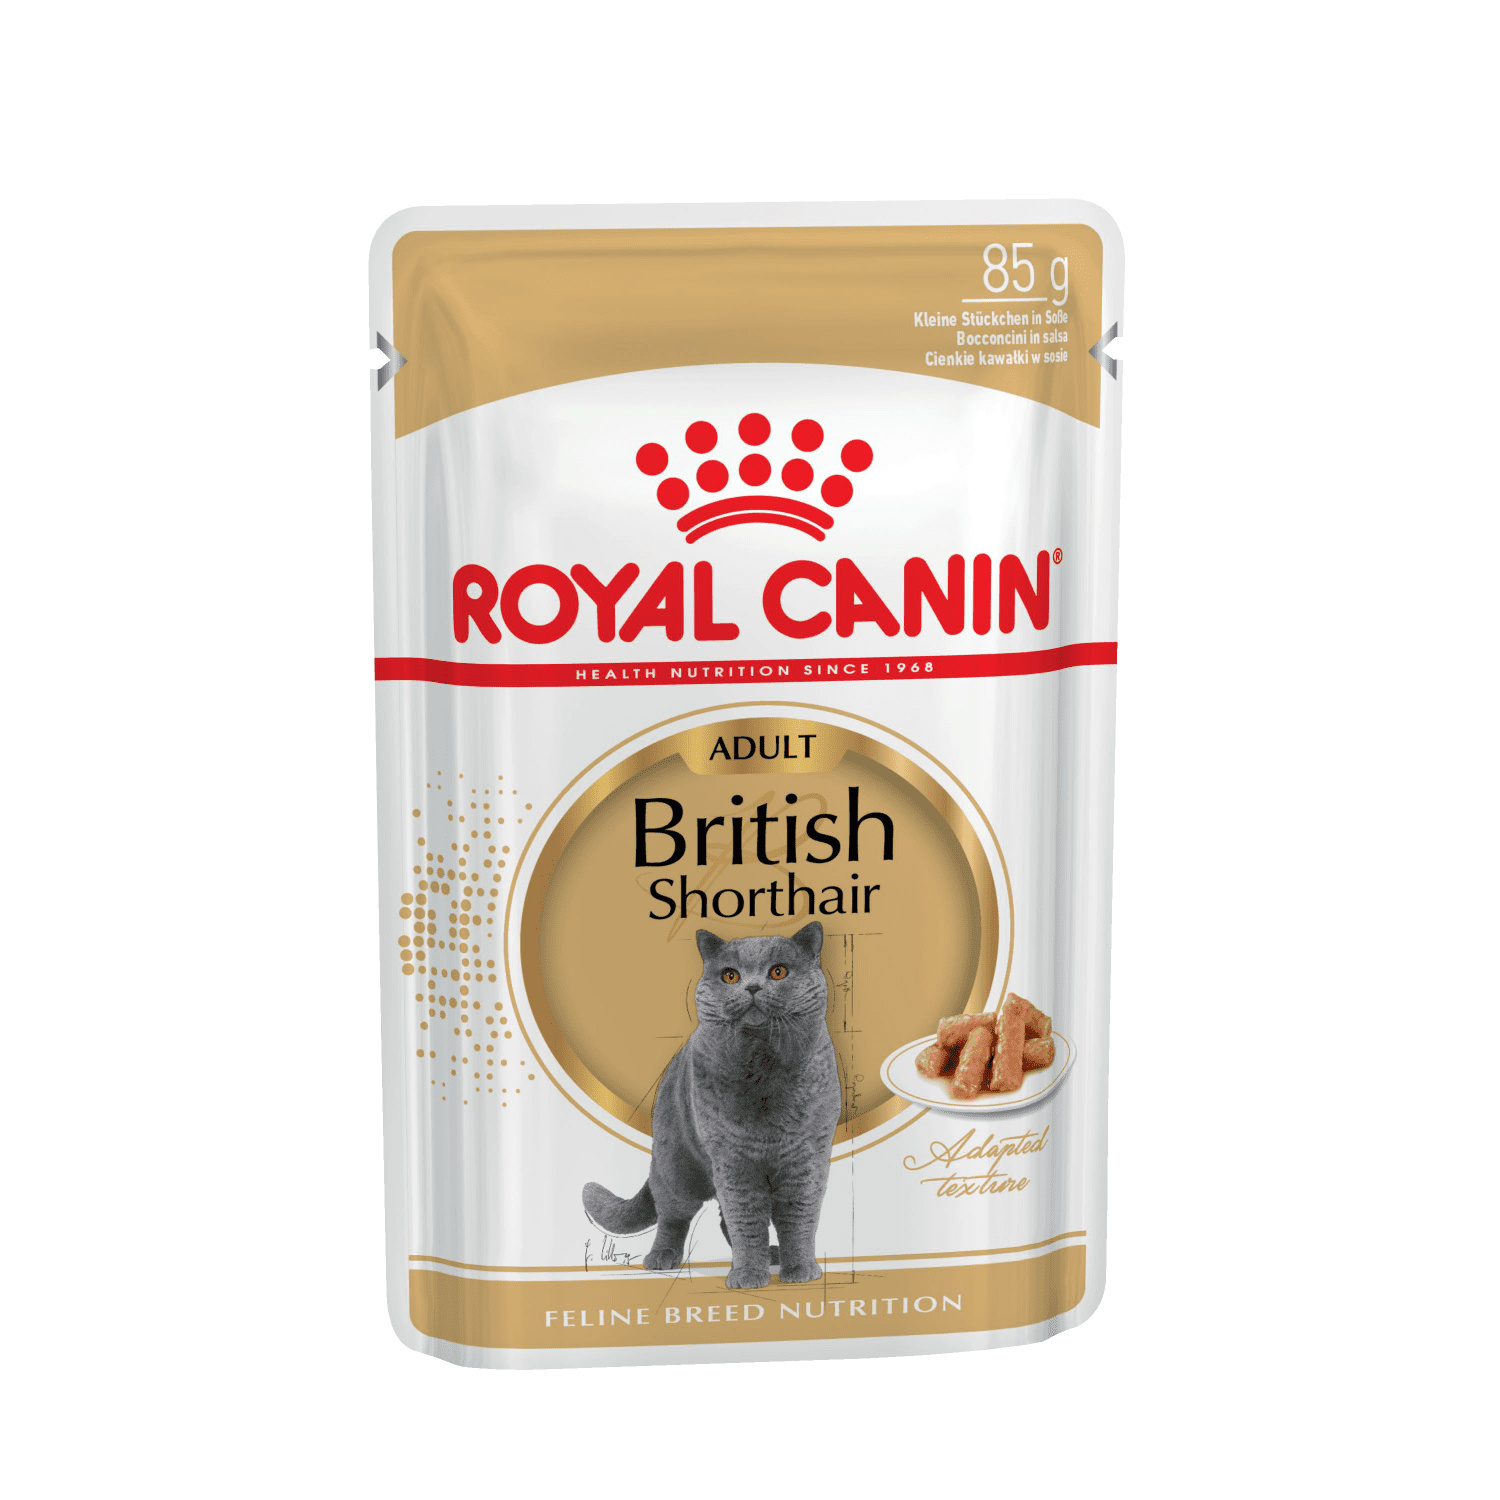 Royal Canin паучи Royal Canin паучи паучи кусочки в соусе для Британской короткошерстной кошки старше 12 месяцев (85 г) royal canin паучи royal canin паучи кусочки в желе для котят 4 12 месяцев 85 г